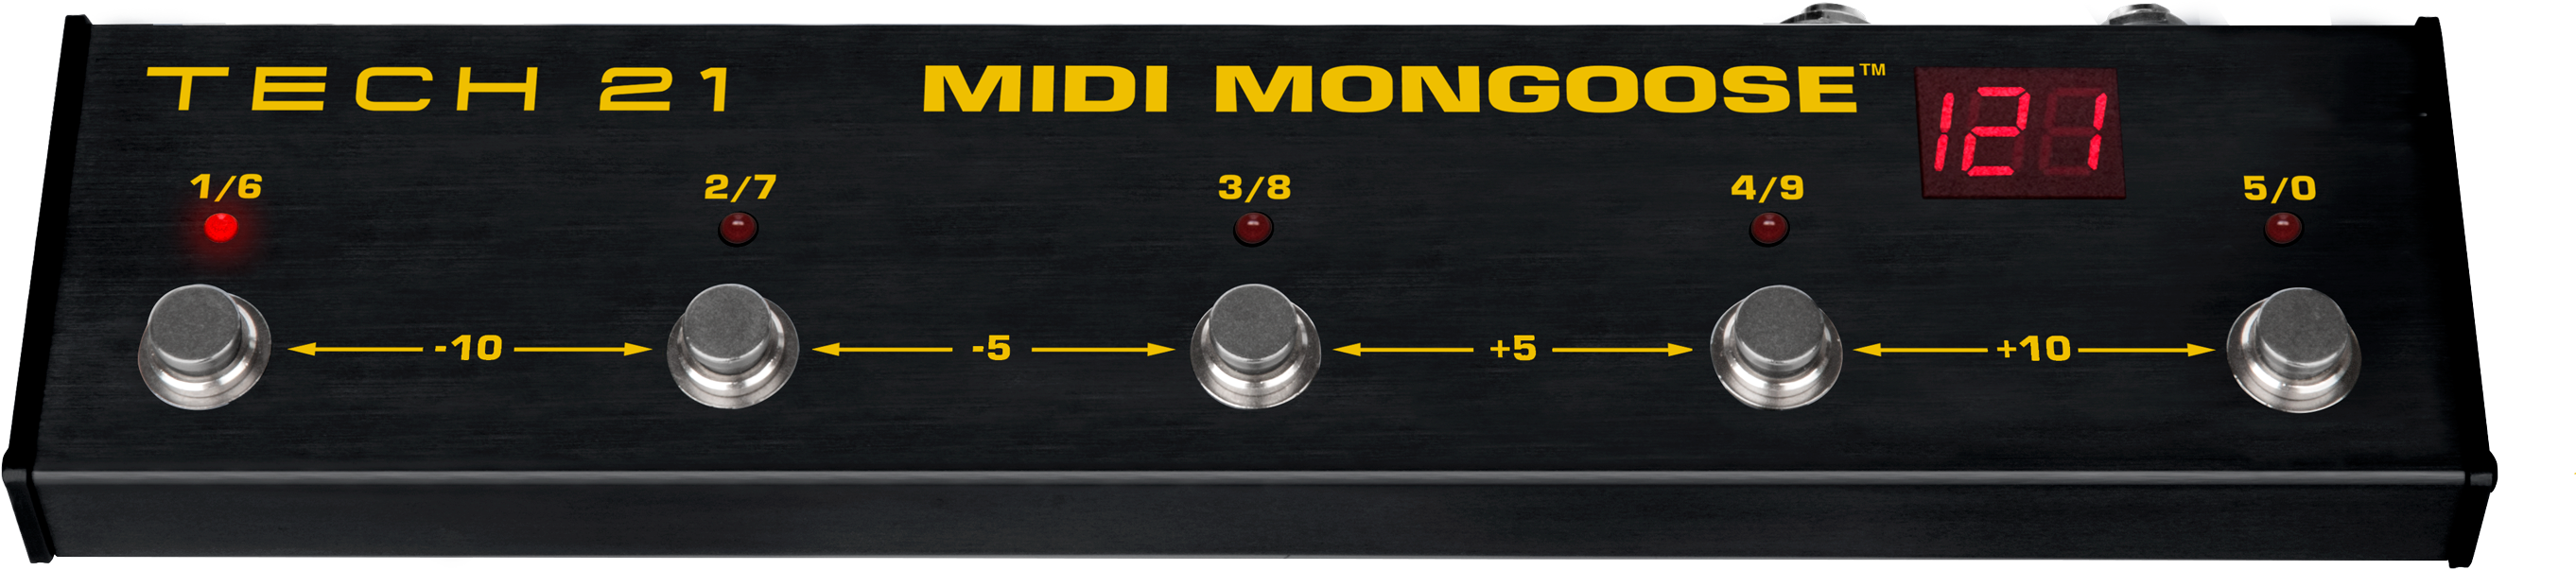 Midi Mongoose – Tech 21 NYC